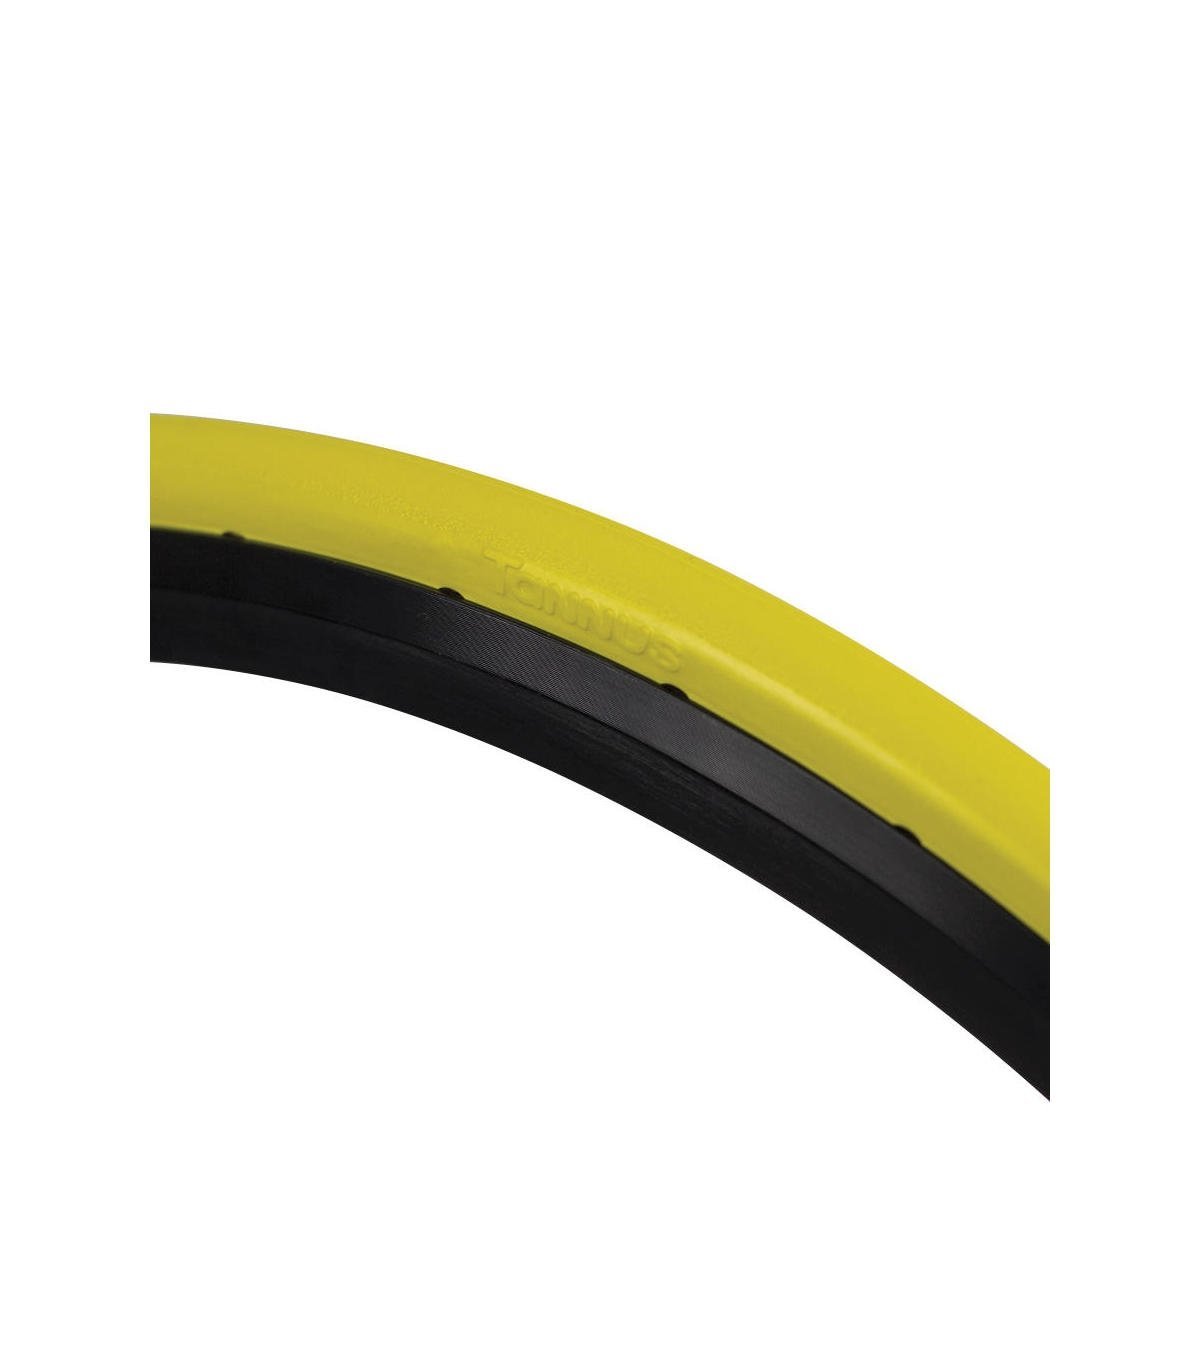 Cubierta Slick 700 * 23c (23-622) Hard Tannus Airless Tire - amarillo - 